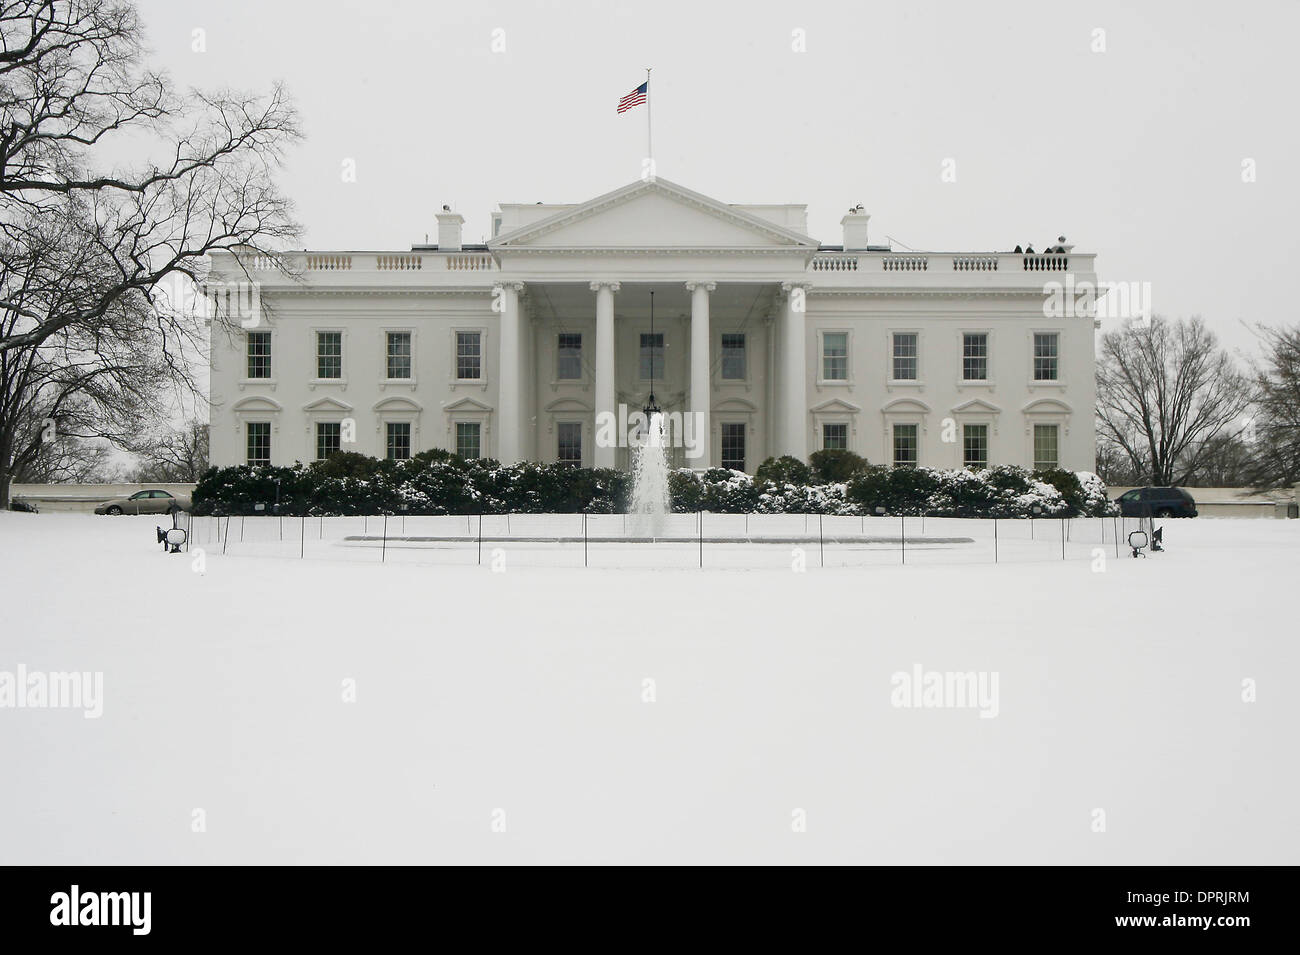 Marzo 2nd, 2009 - Washington, DC, EEUU - la Casa Blanca se cubrió por sbow desde una tormenta invernal que azotó a Washington el Lunes llevando dondequiera a partir 4 a 11 centímetros de nieve en la zona. (Crédito de la Imagen: © James Berglie/ZUMA Press) Foto de stock